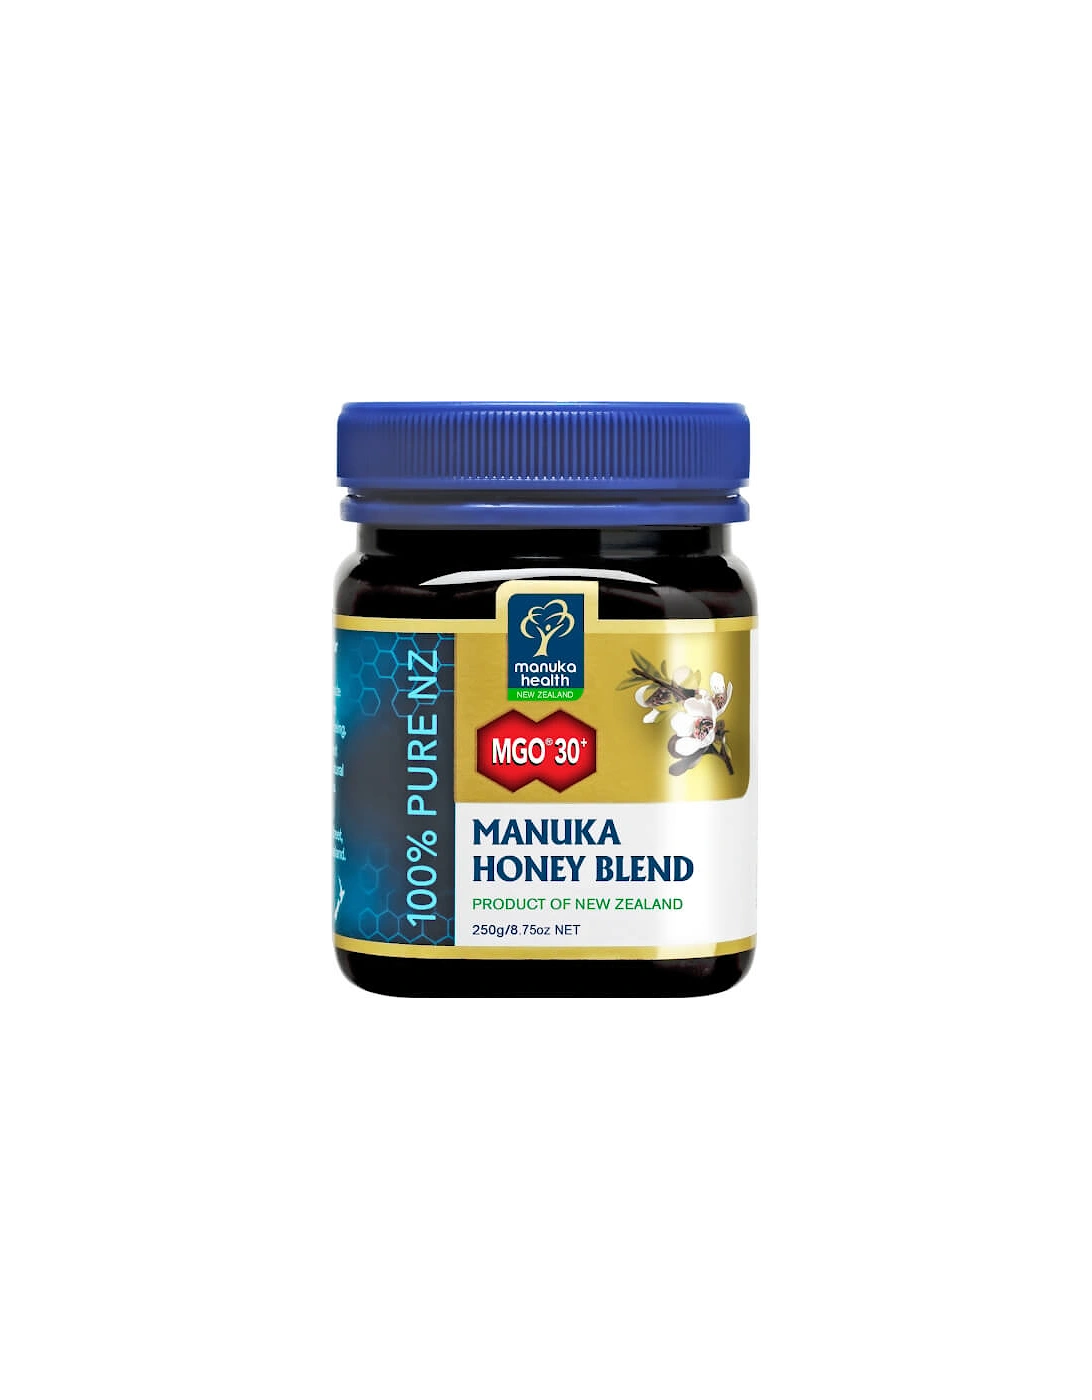 Health MGO 30+ Honey Blend Family Jar 1kg, 3 of 2